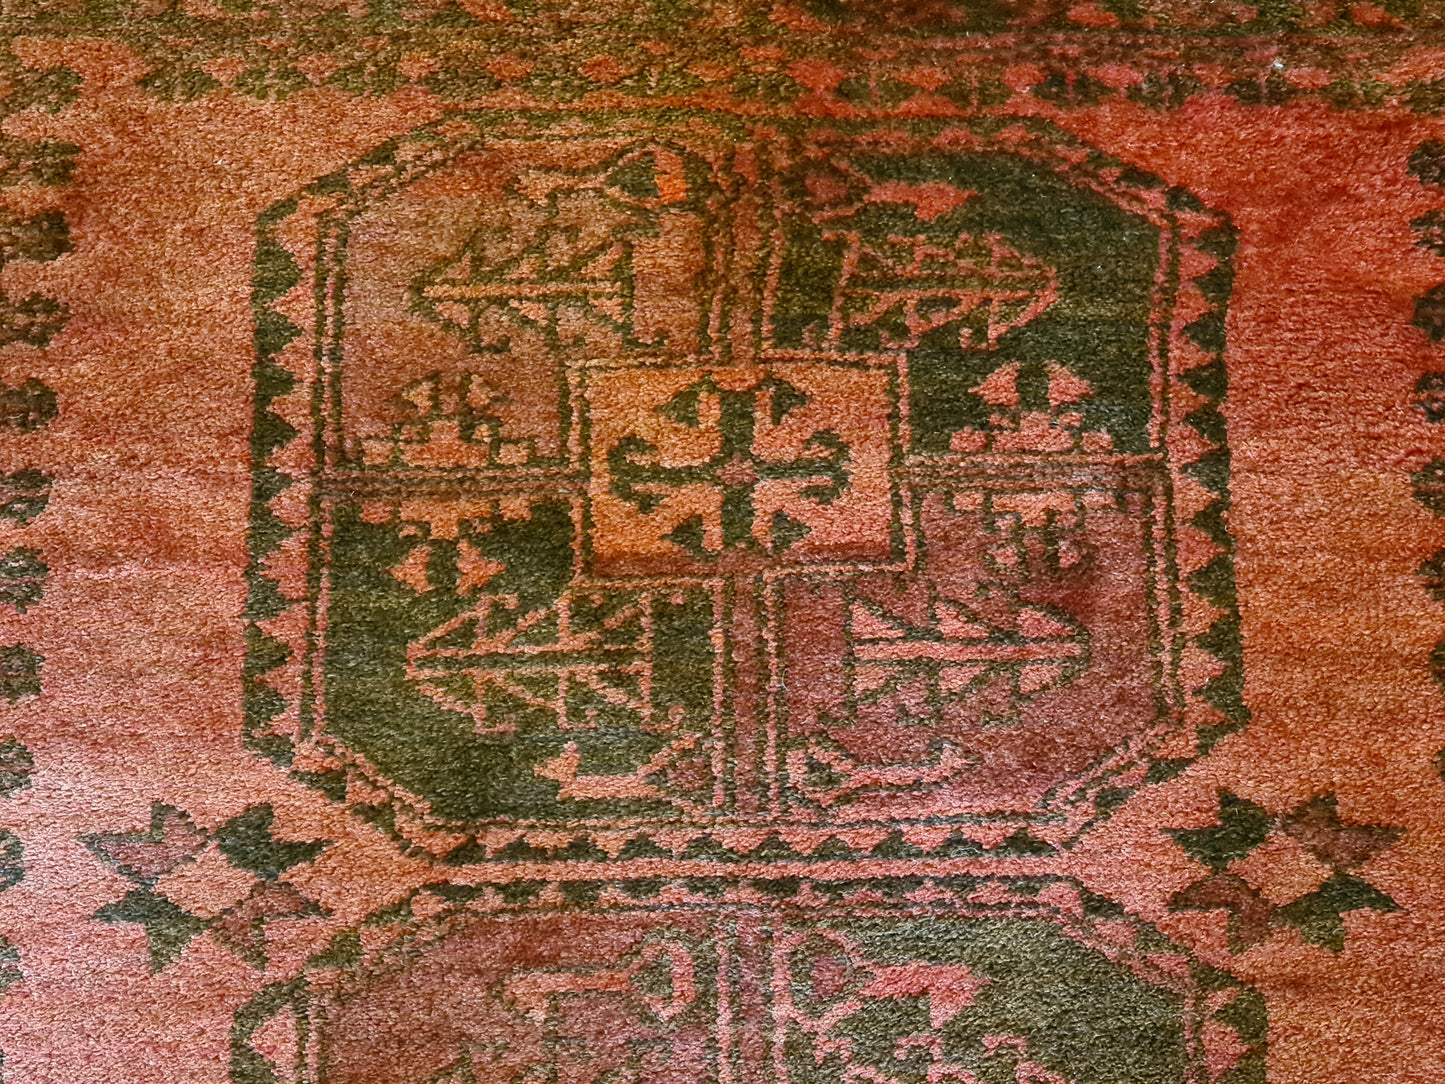 Antiker Handgeknüpfter Orientteppich – Afghanischer Art Déco Teppich 136x114cm